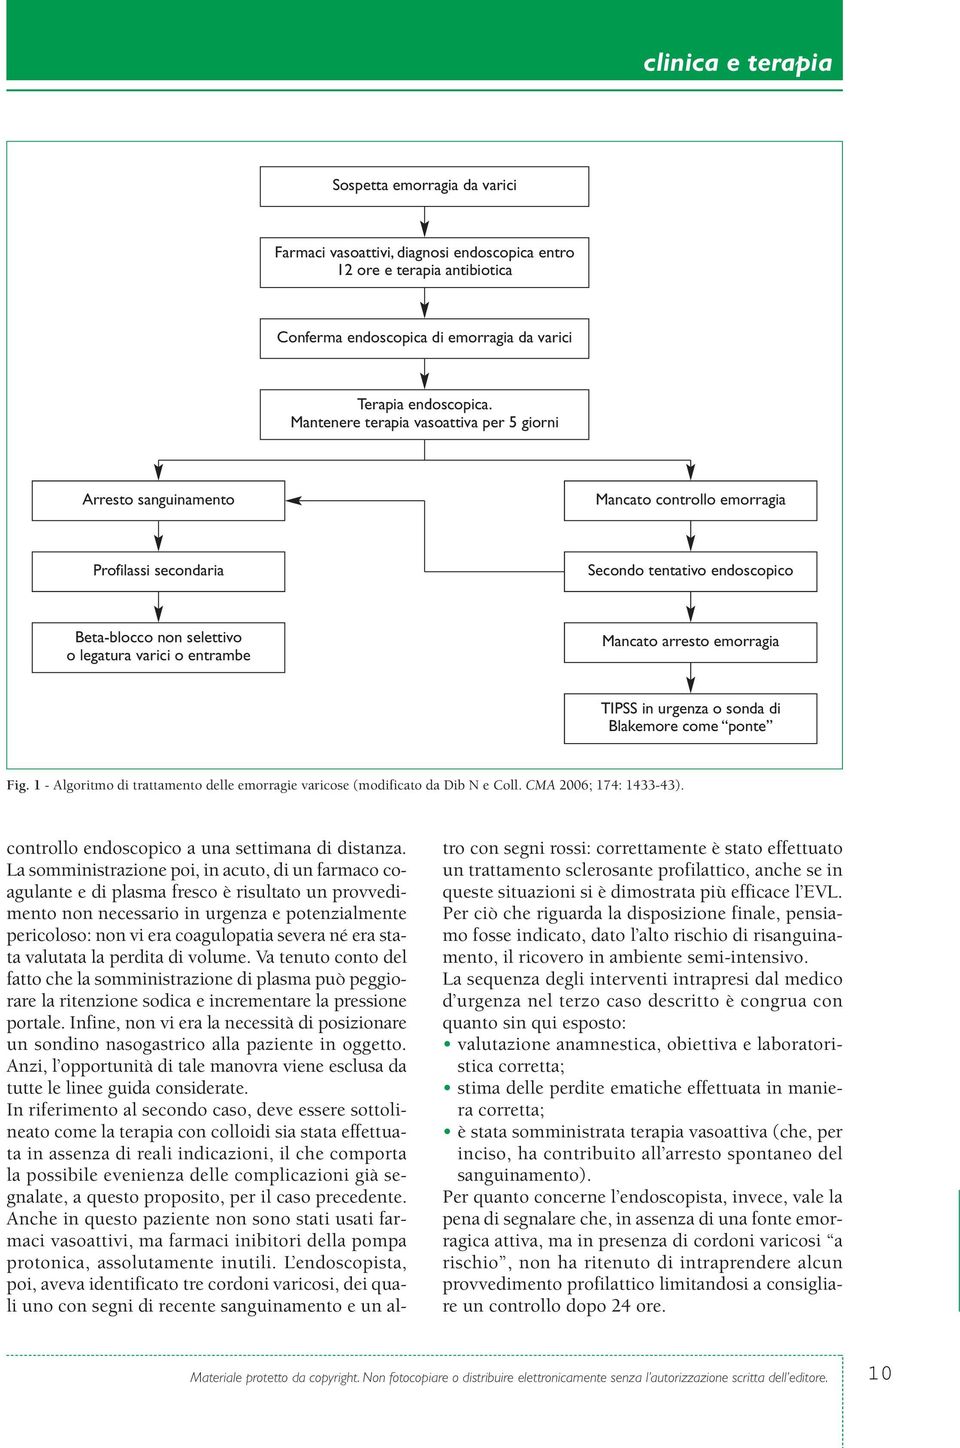 1 - Algoritmo di trattamento delle emorragie varicose (modificato da Dib N e Coll. CMA 2006; 174: 1433-43).